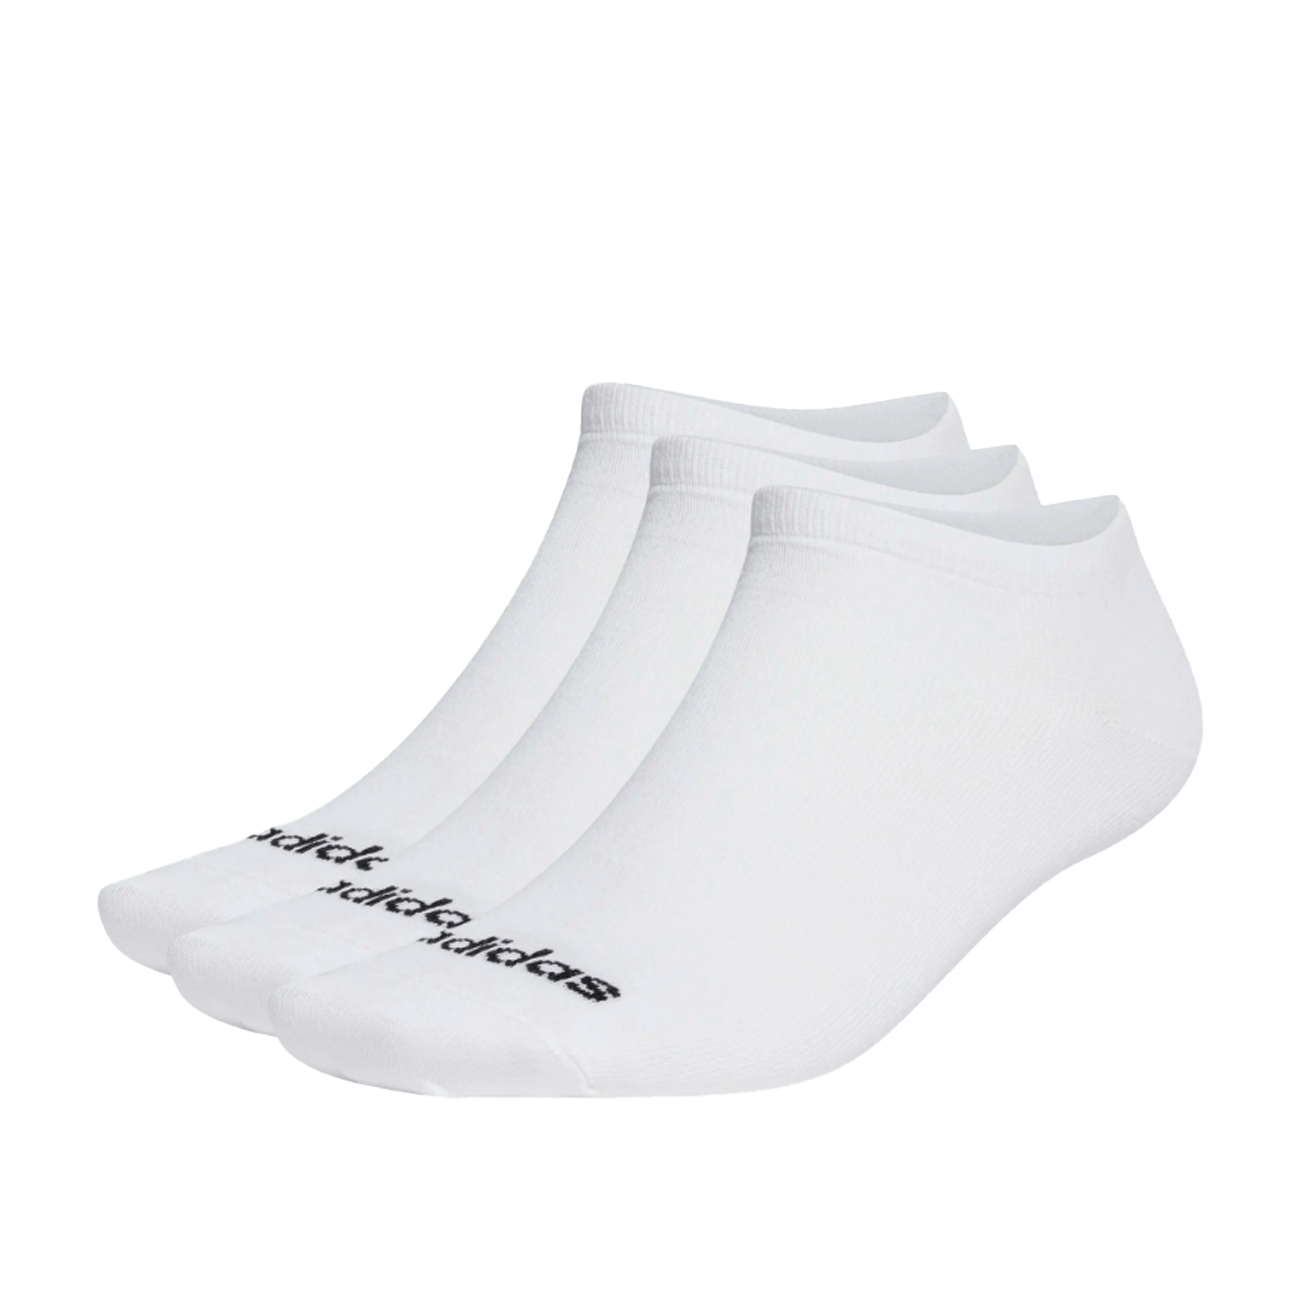 adidas Low Top Socken 3 Pack (Weiß)  - Allike Store